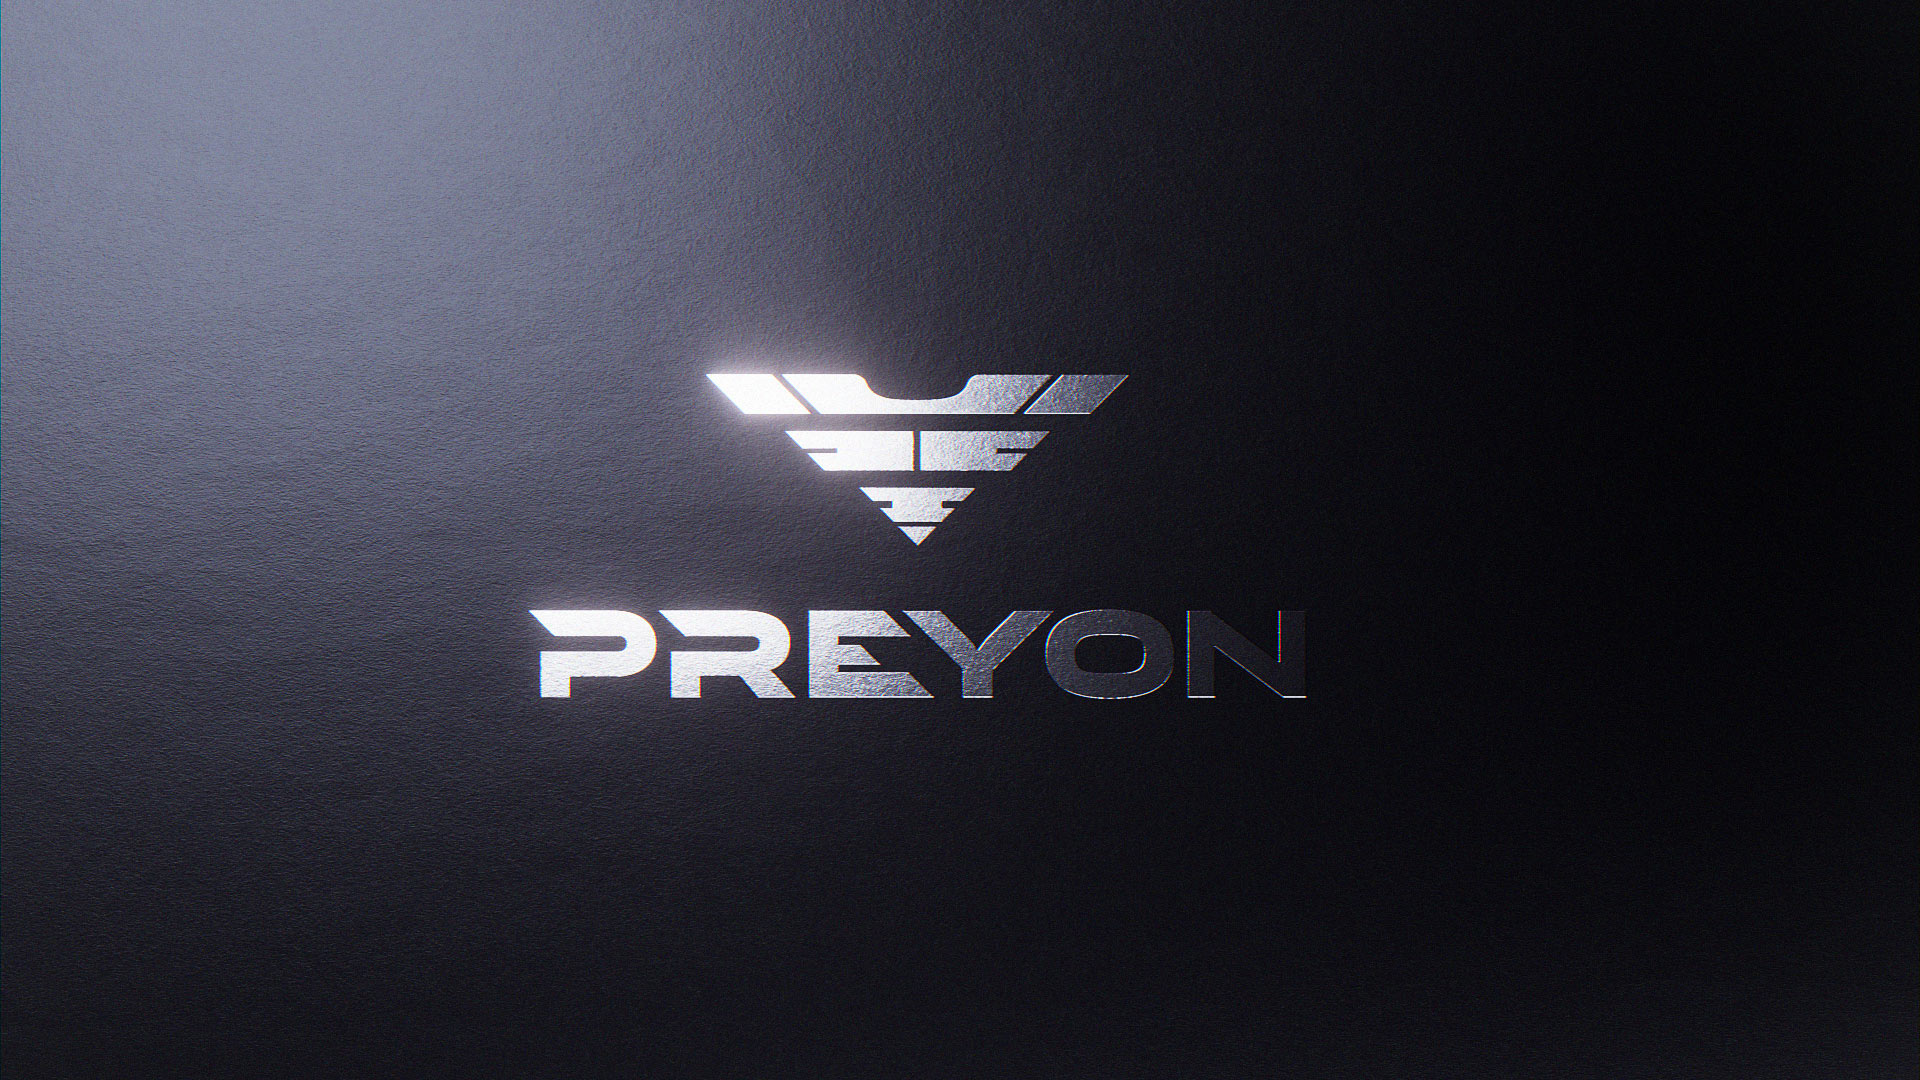 PREYON brand design